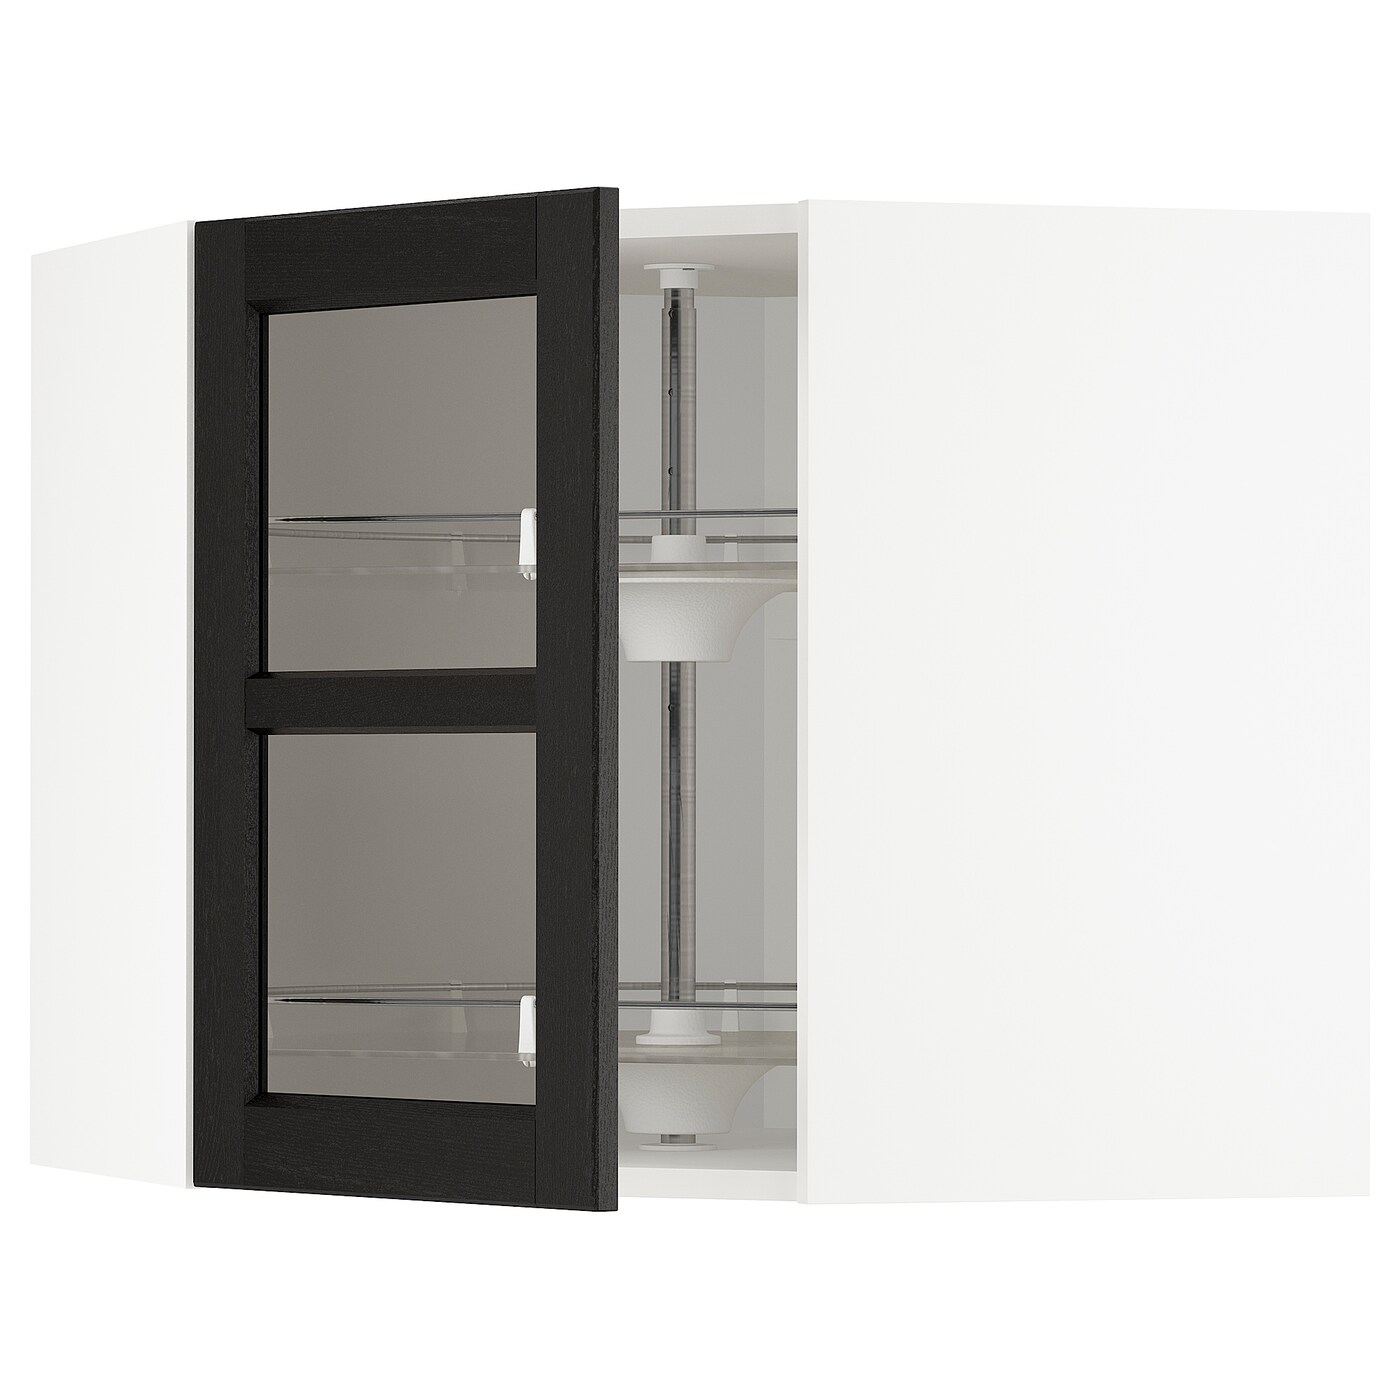 Навесной шкаф - IKEA METOD, 67.5х67.5х60 см, белый/черный/стекло, МЕТОД ИКЕА